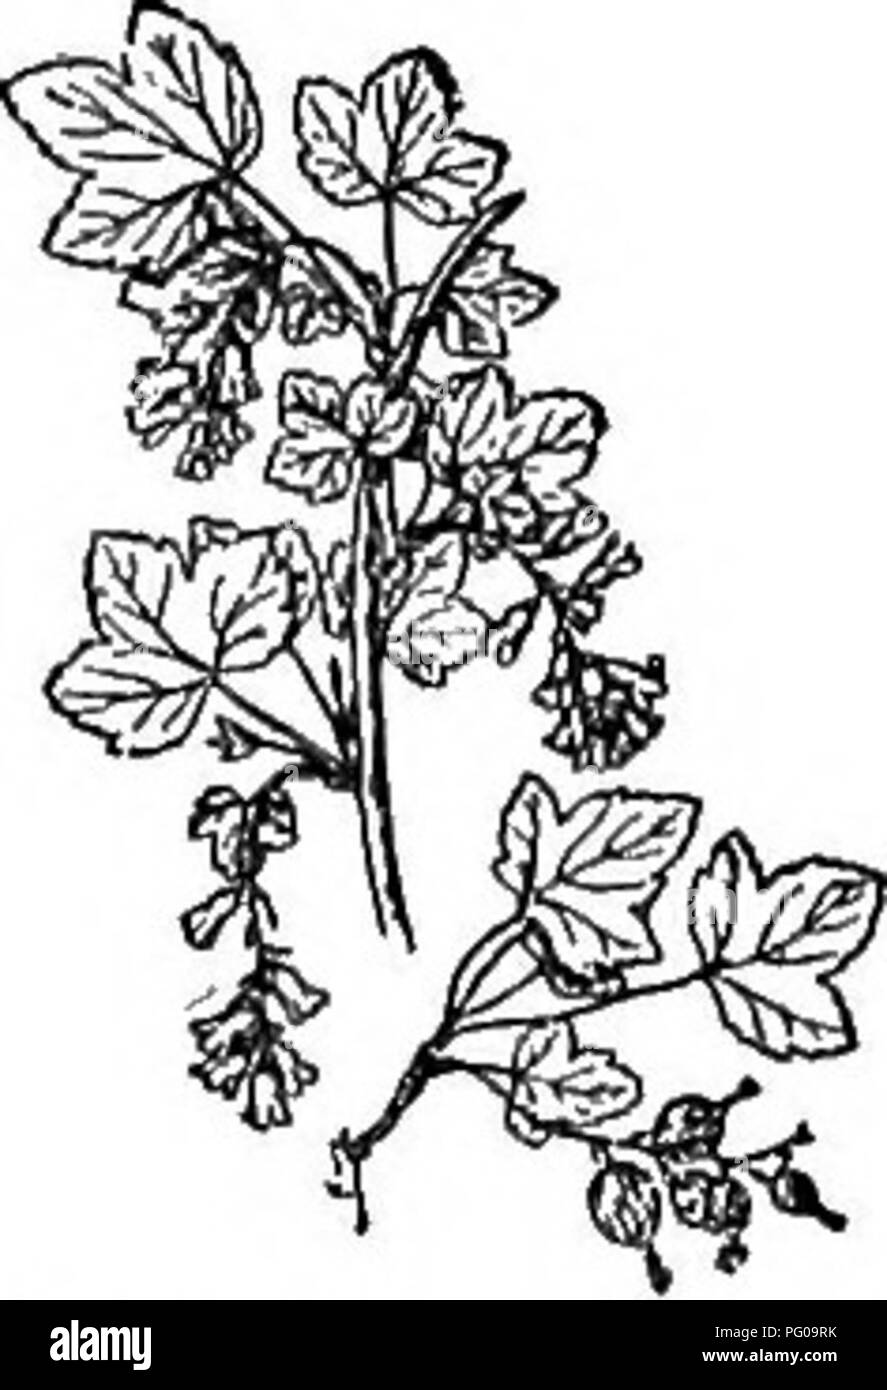 . Scelto western flora : Manitoba, Saskatchewan, Alberta . La botanica; botanica; Botanica. 60 selezionato "WESTERN FLORA 3. R. flaridum, L'H&amp;. Lascia bruscamente il 3- S-lobate, doppiamente ser- rate; fiori grandi, giallastro; racemi cada, roverella; calice a campana, liscia. Spessore umido- ste, Man. e E. Sask. 4. R. hudsonianum, Richards. Wild Curbant Nero.. Fig. 43. -Ribes floridum.. Si prega di notare che queste immagini vengono estratte dalla pagina sottoposta a scansione di immagini che possono essere state migliorate digitalmente per la leggibilità - Colorazione e aspetto di queste illustrazioni potrebbero non perfettamente assomigliano al lavoro originale. Foto Stock